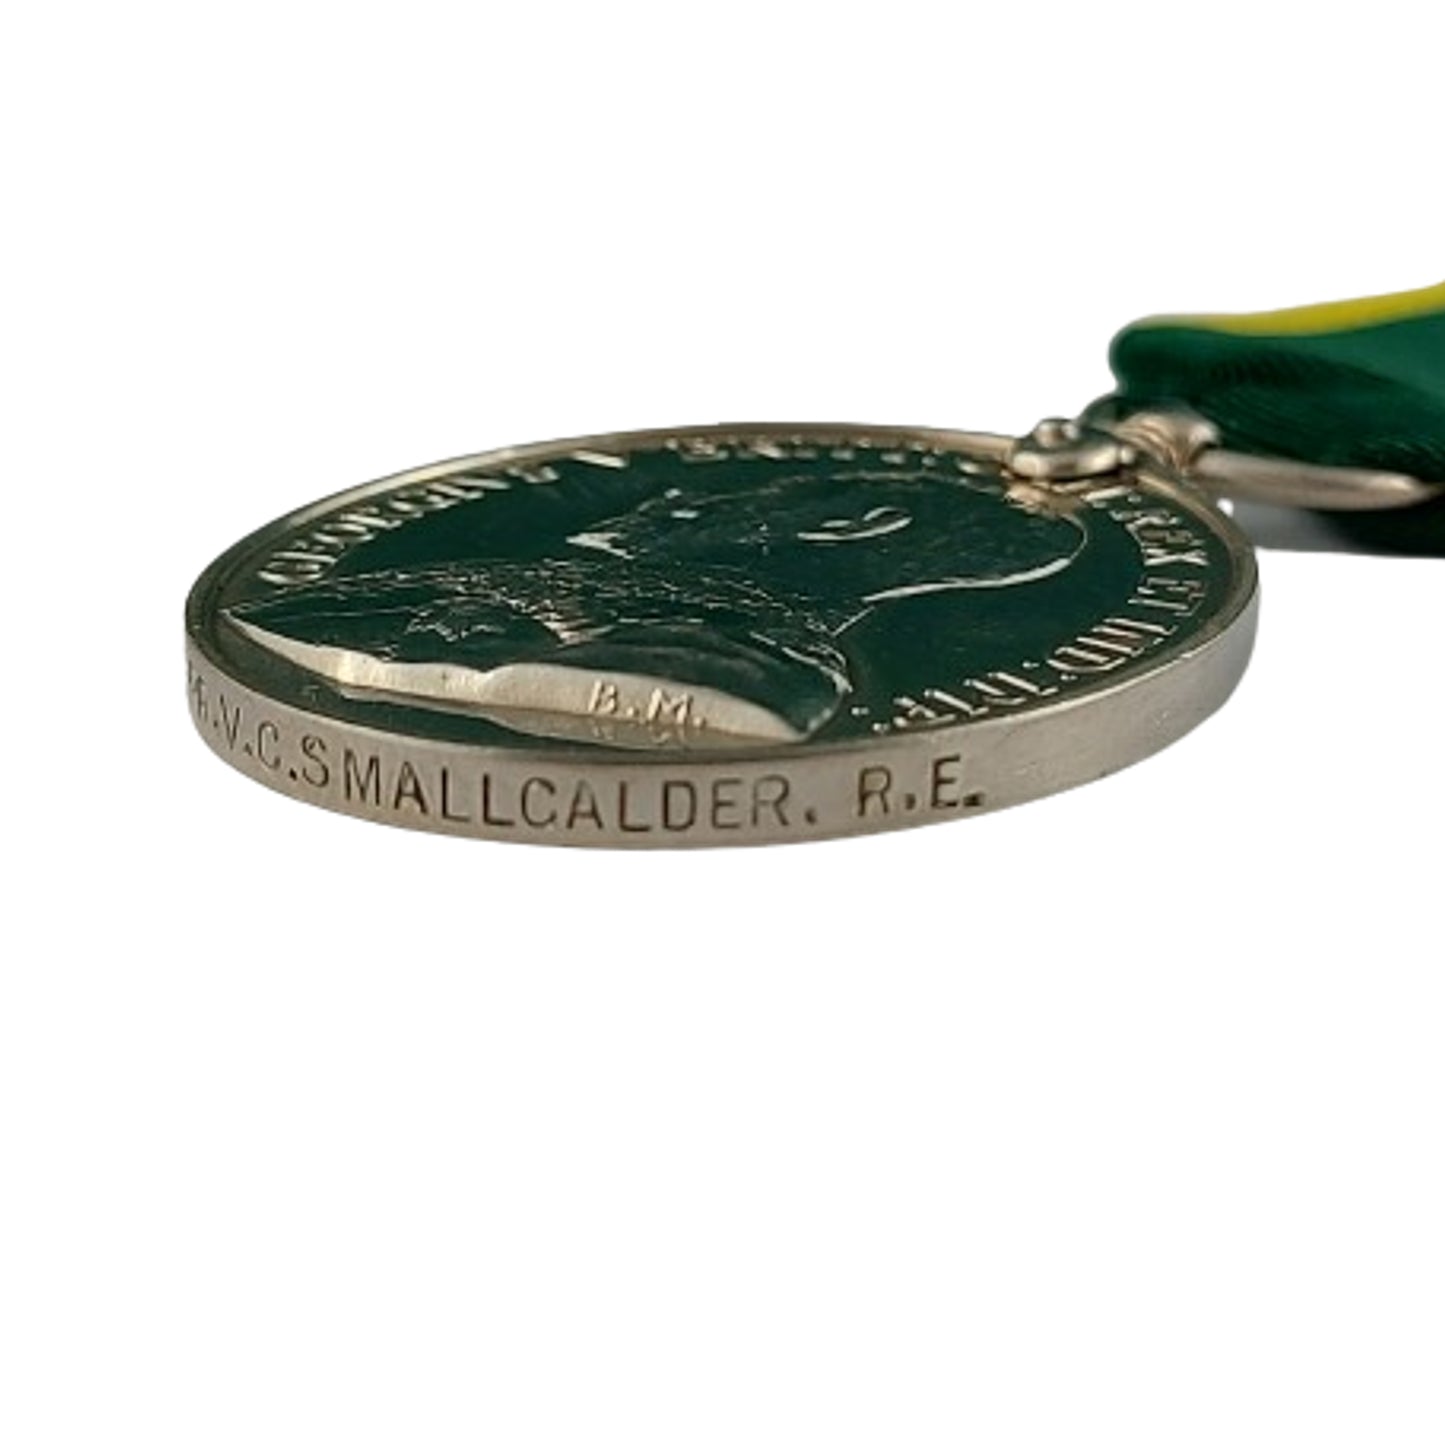 British Territorial Force Efficiency Medal - Royal Engineers